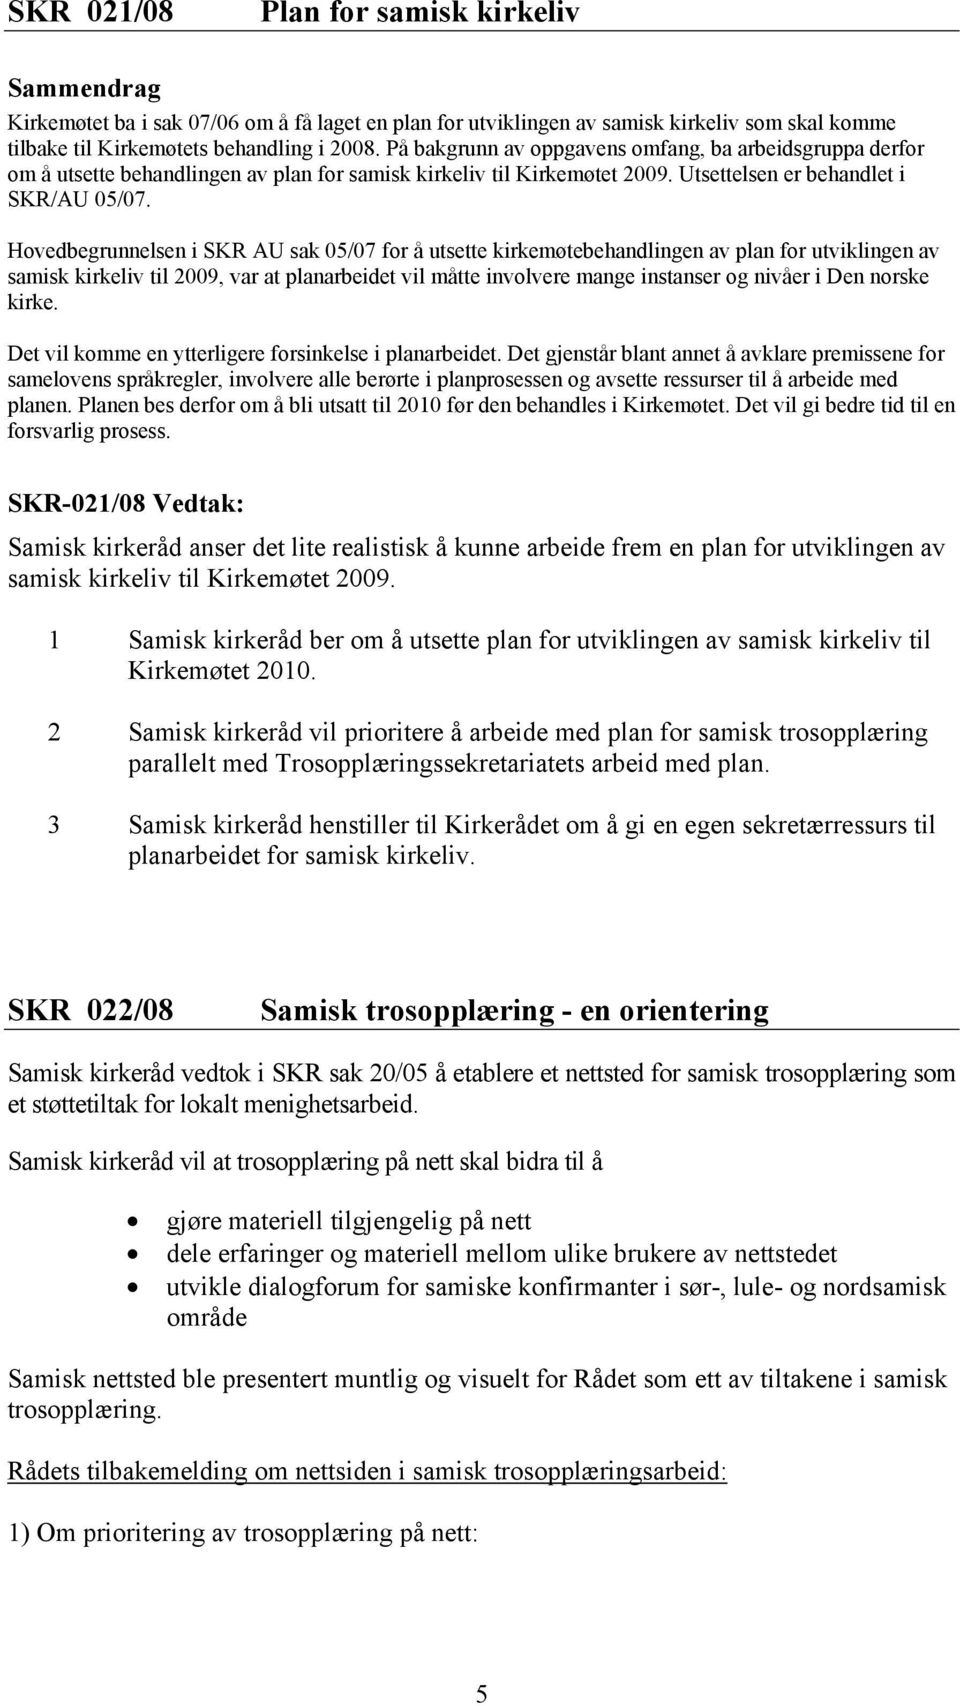 Hovedbegrunnelsen i SKR AU sak 05/07 for å utsette kirkemøtebehandlingen av plan for utviklingen av samisk kirkeliv til 2009, var at planarbeidet vil måtte involvere mange instanser og nivåer i Den